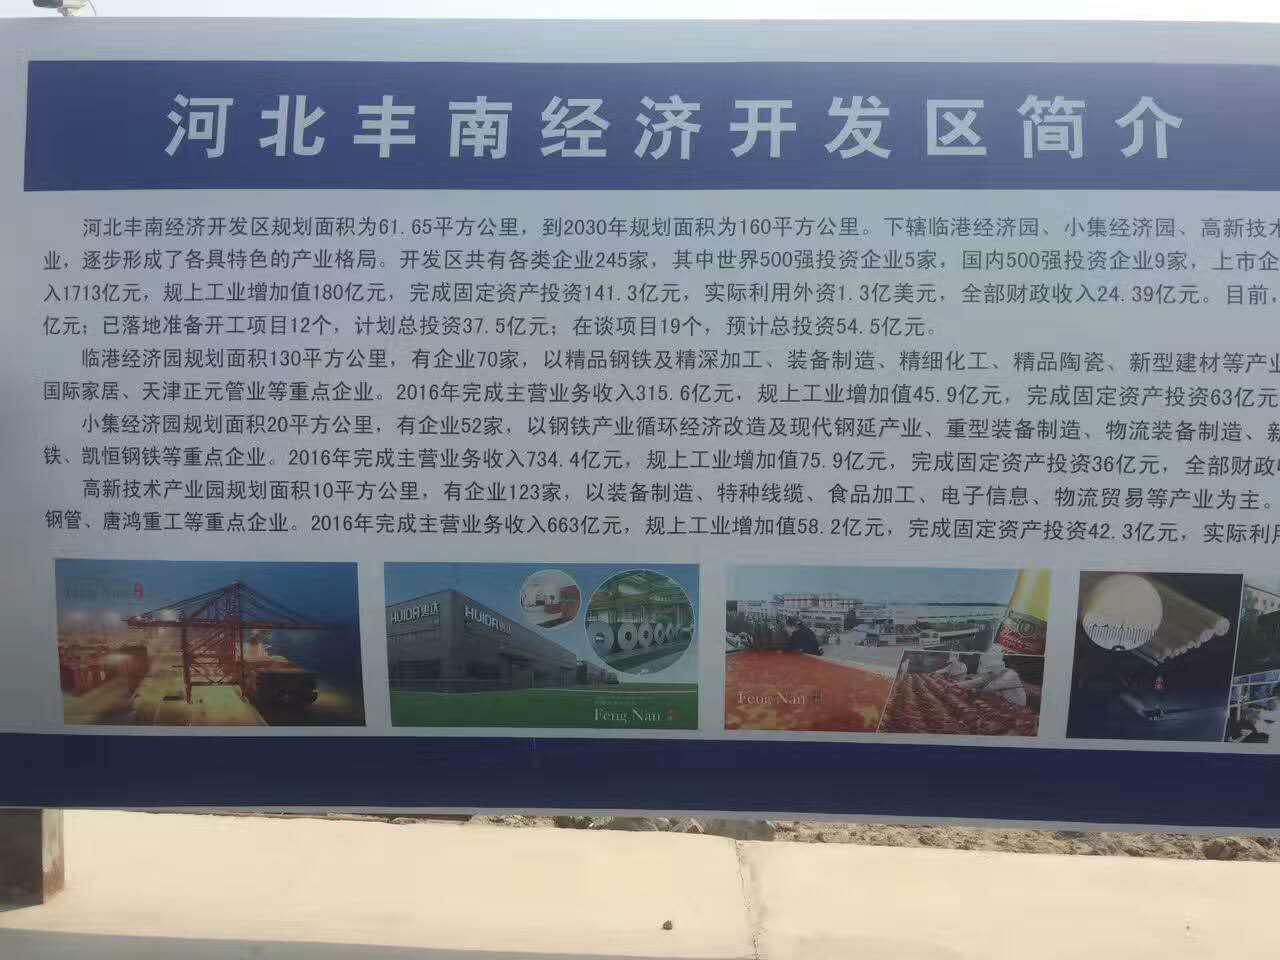 中国工业气体工业协会将在河北丰南经济开发区设立气体园区(图3)